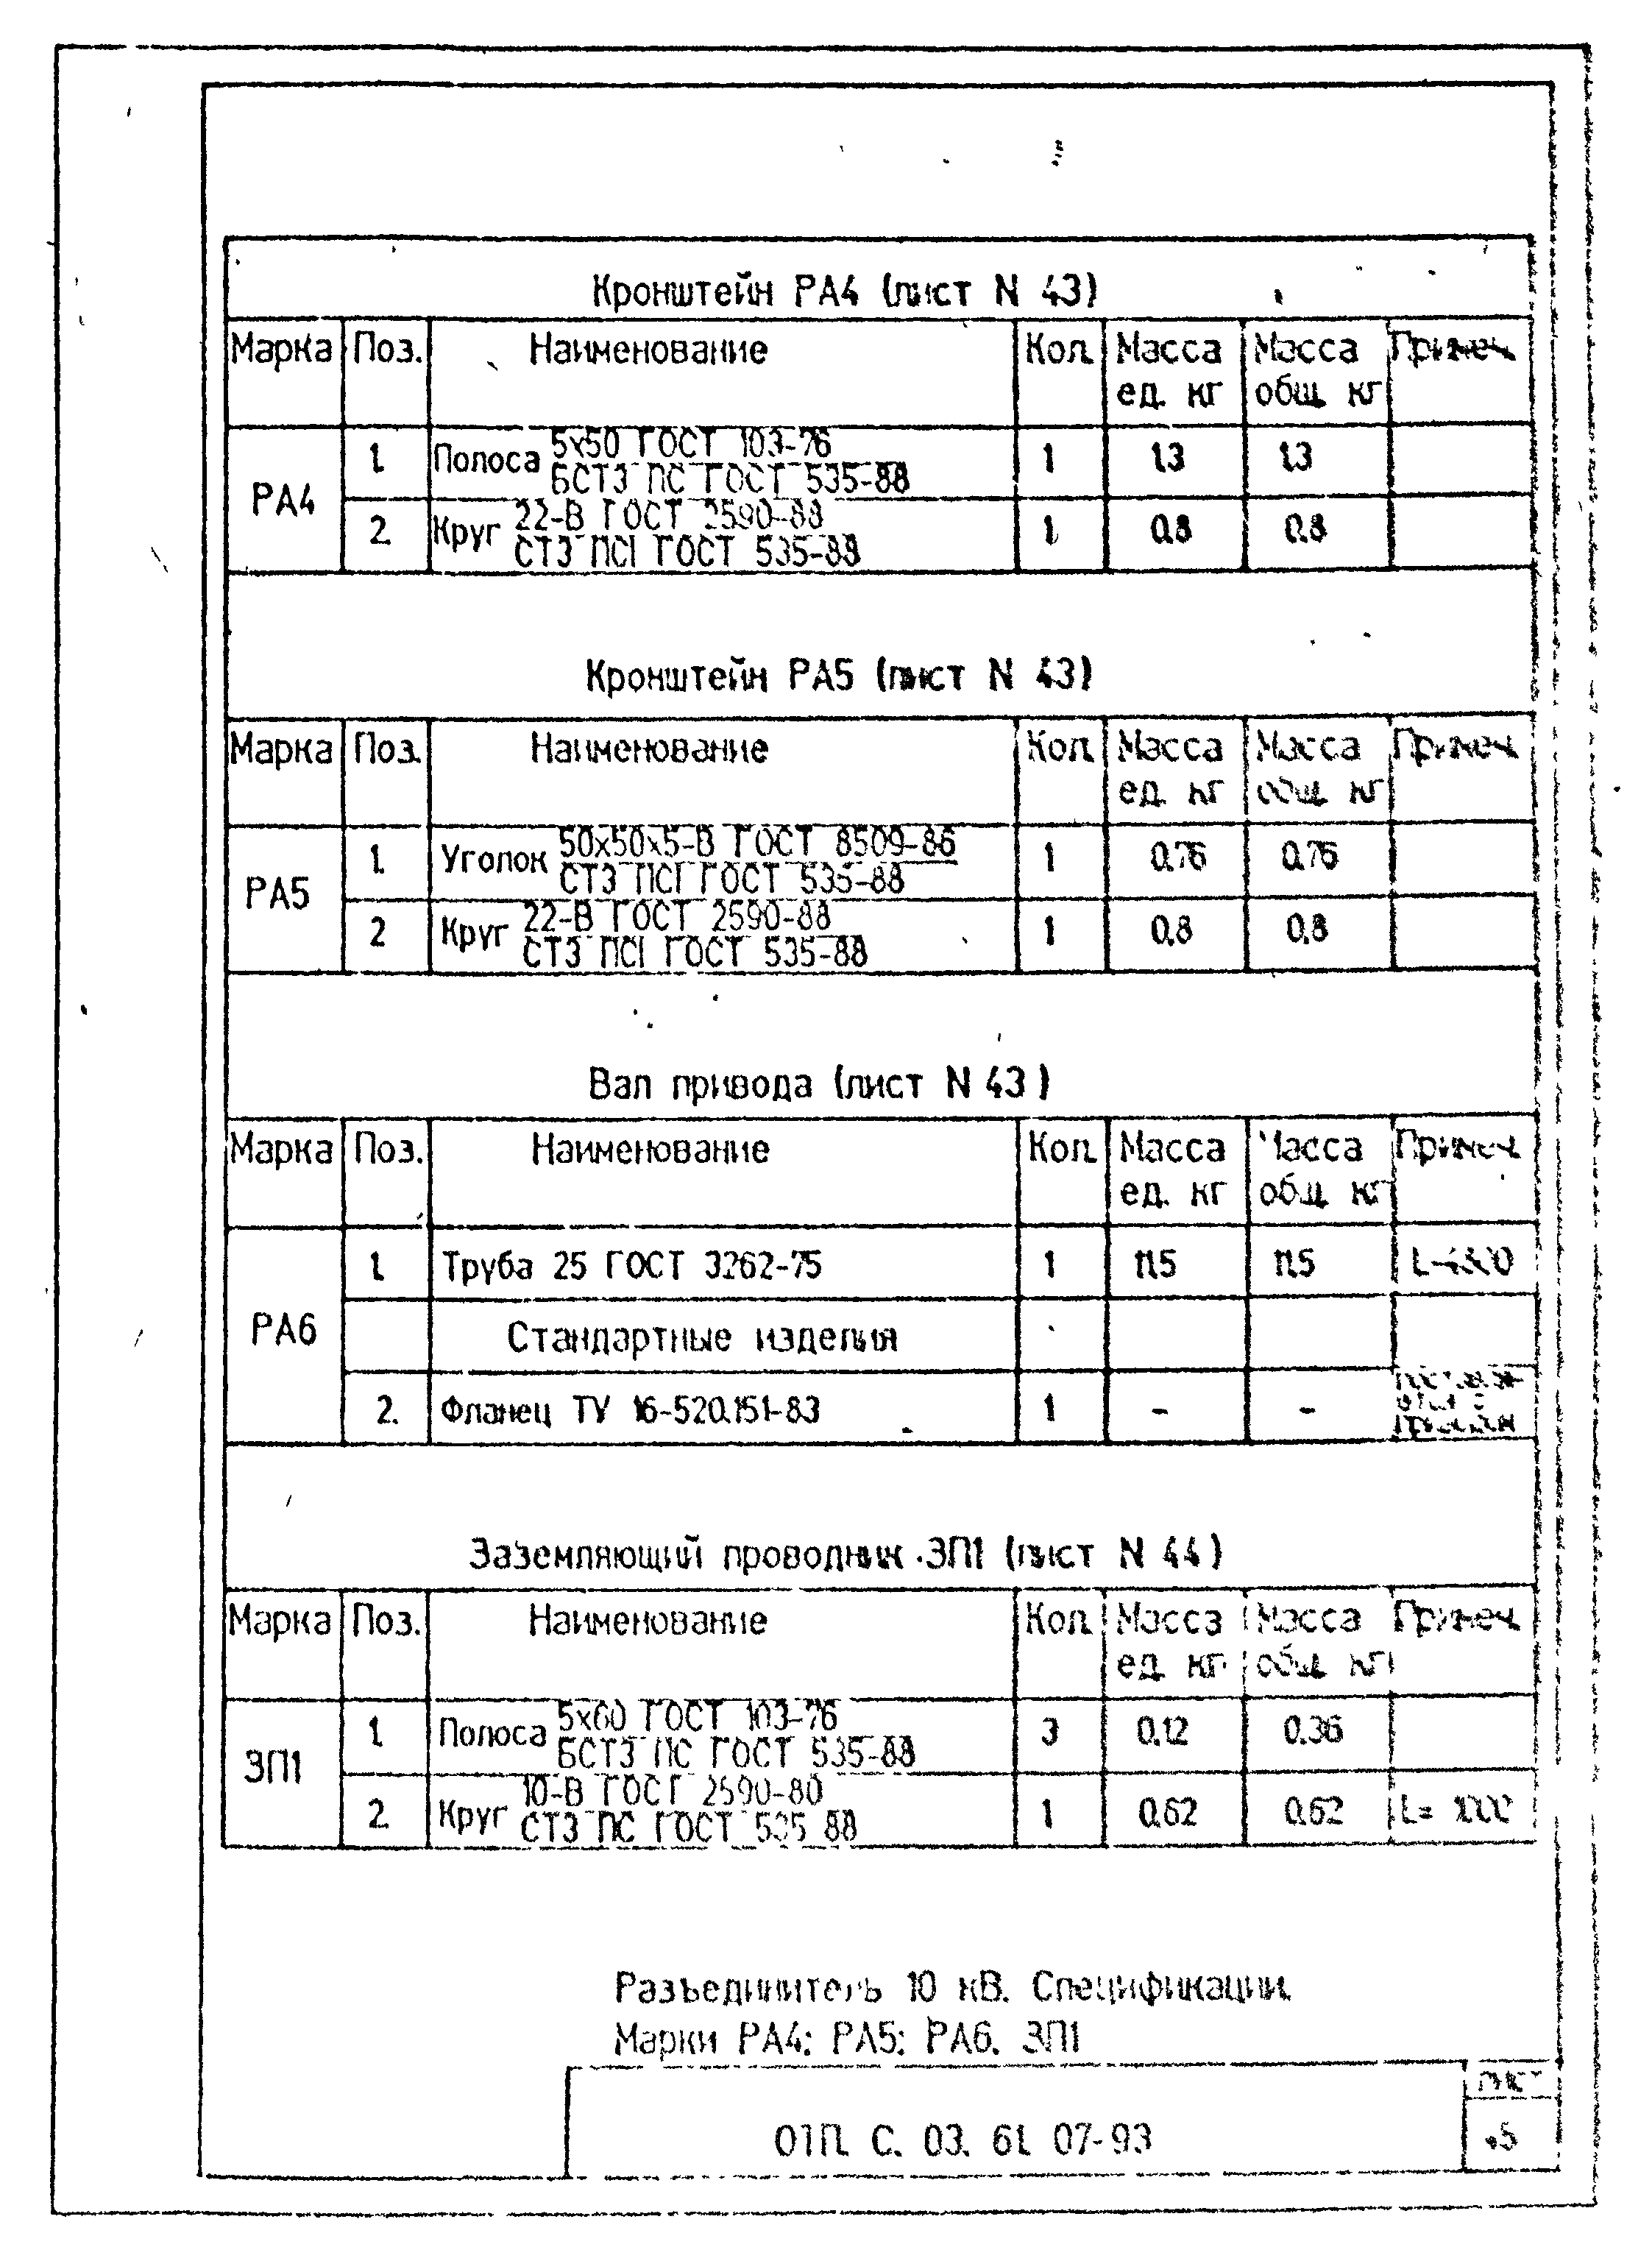 Типовой проект ОТП.С.03.61.07-93